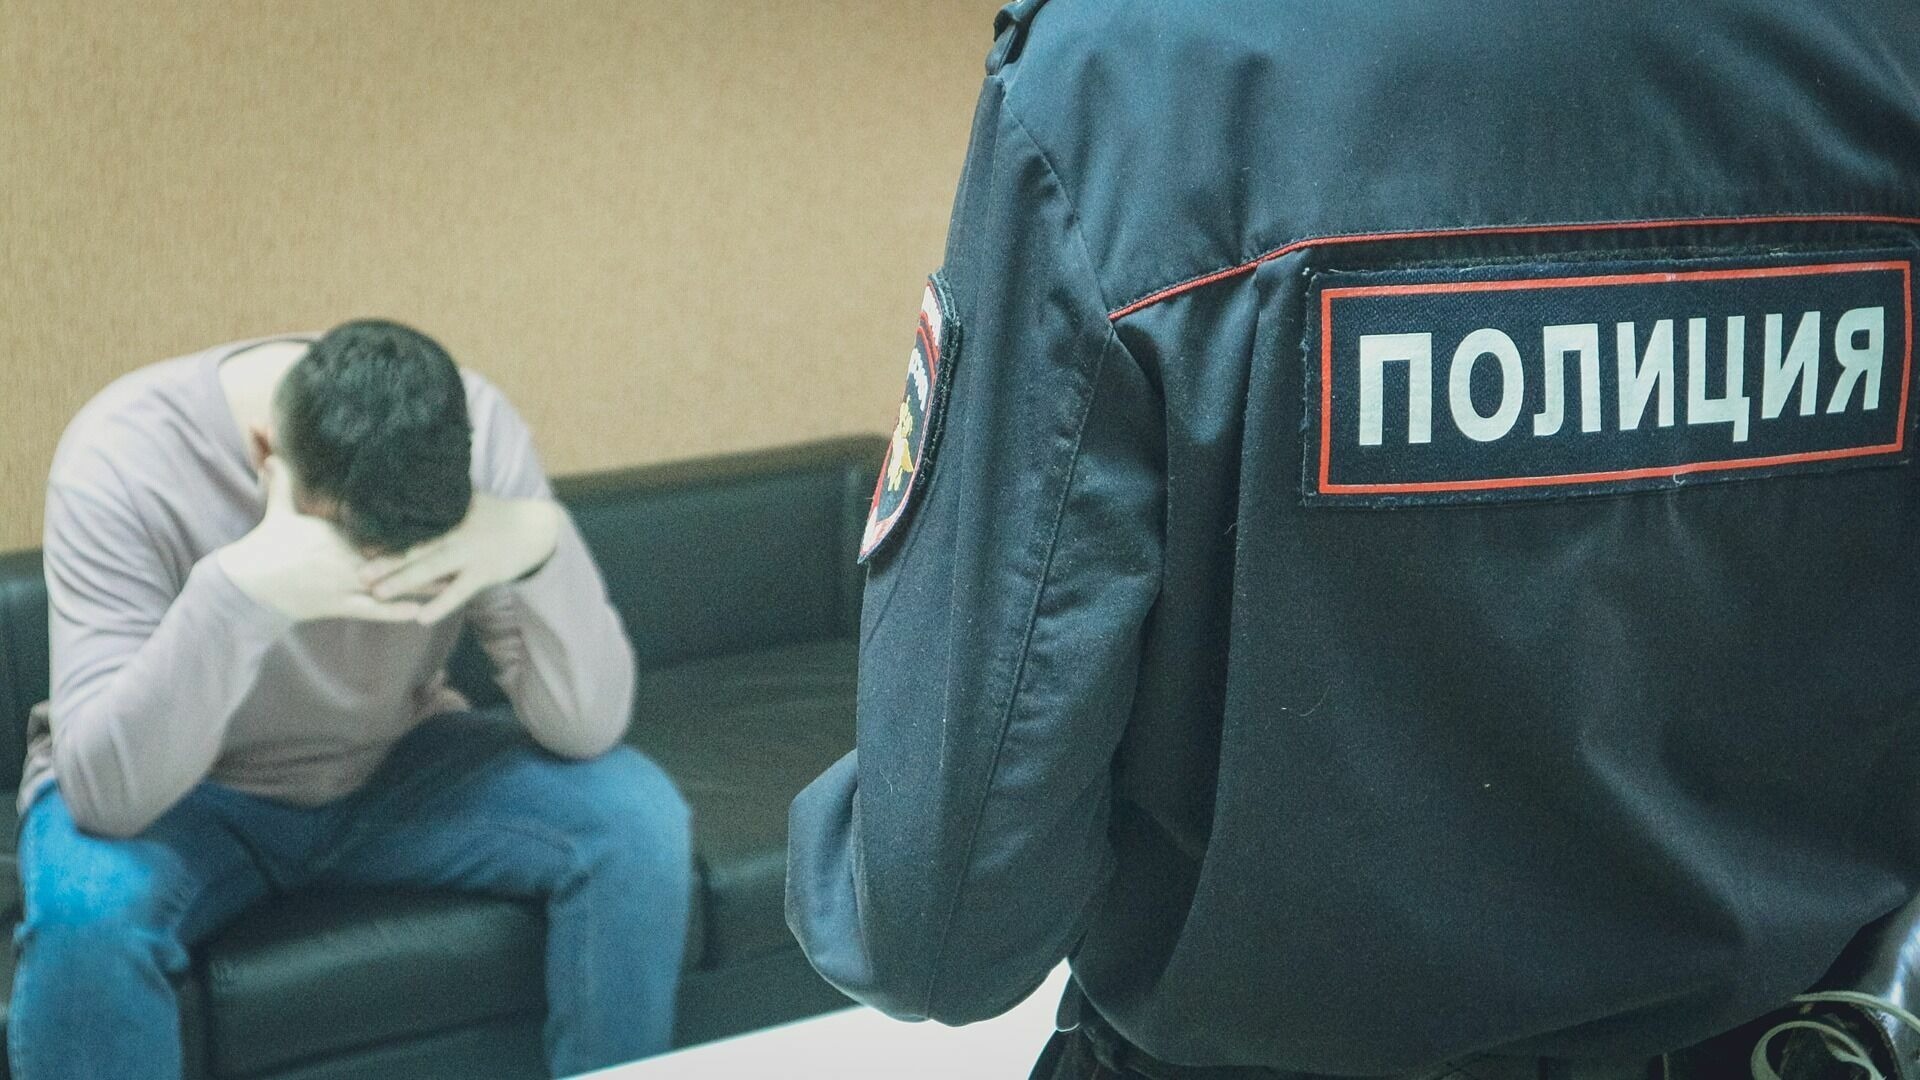 Жестоко грабивших людей студентов задержали в Волгограде